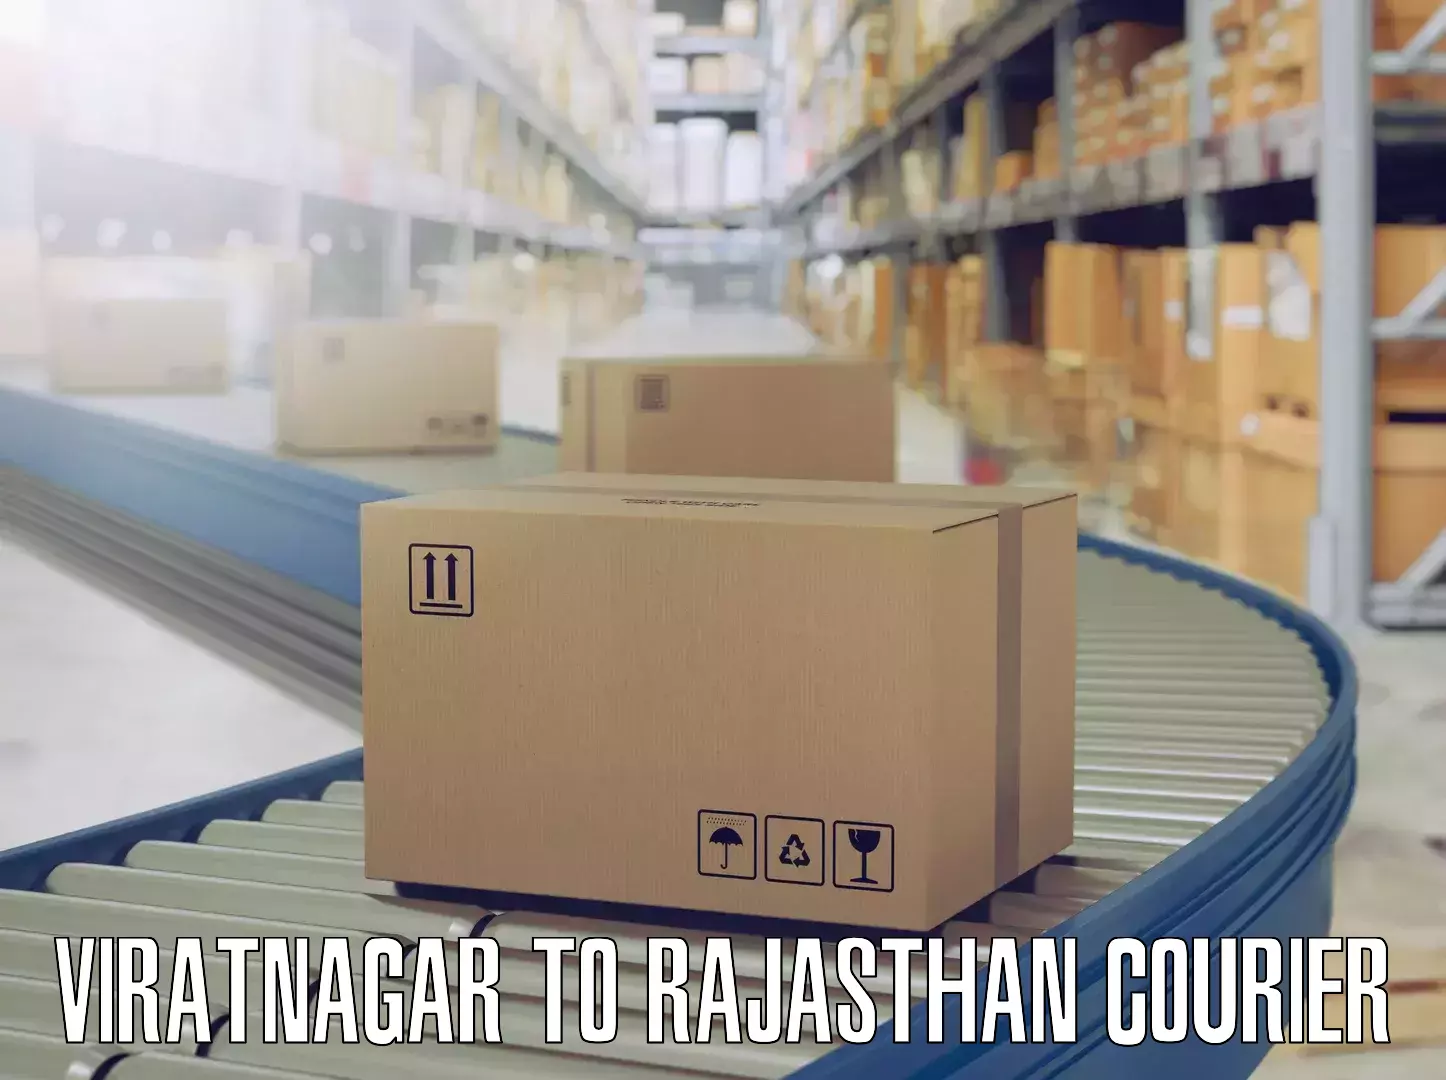 Skilled furniture transporters Viratnagar to Deeg